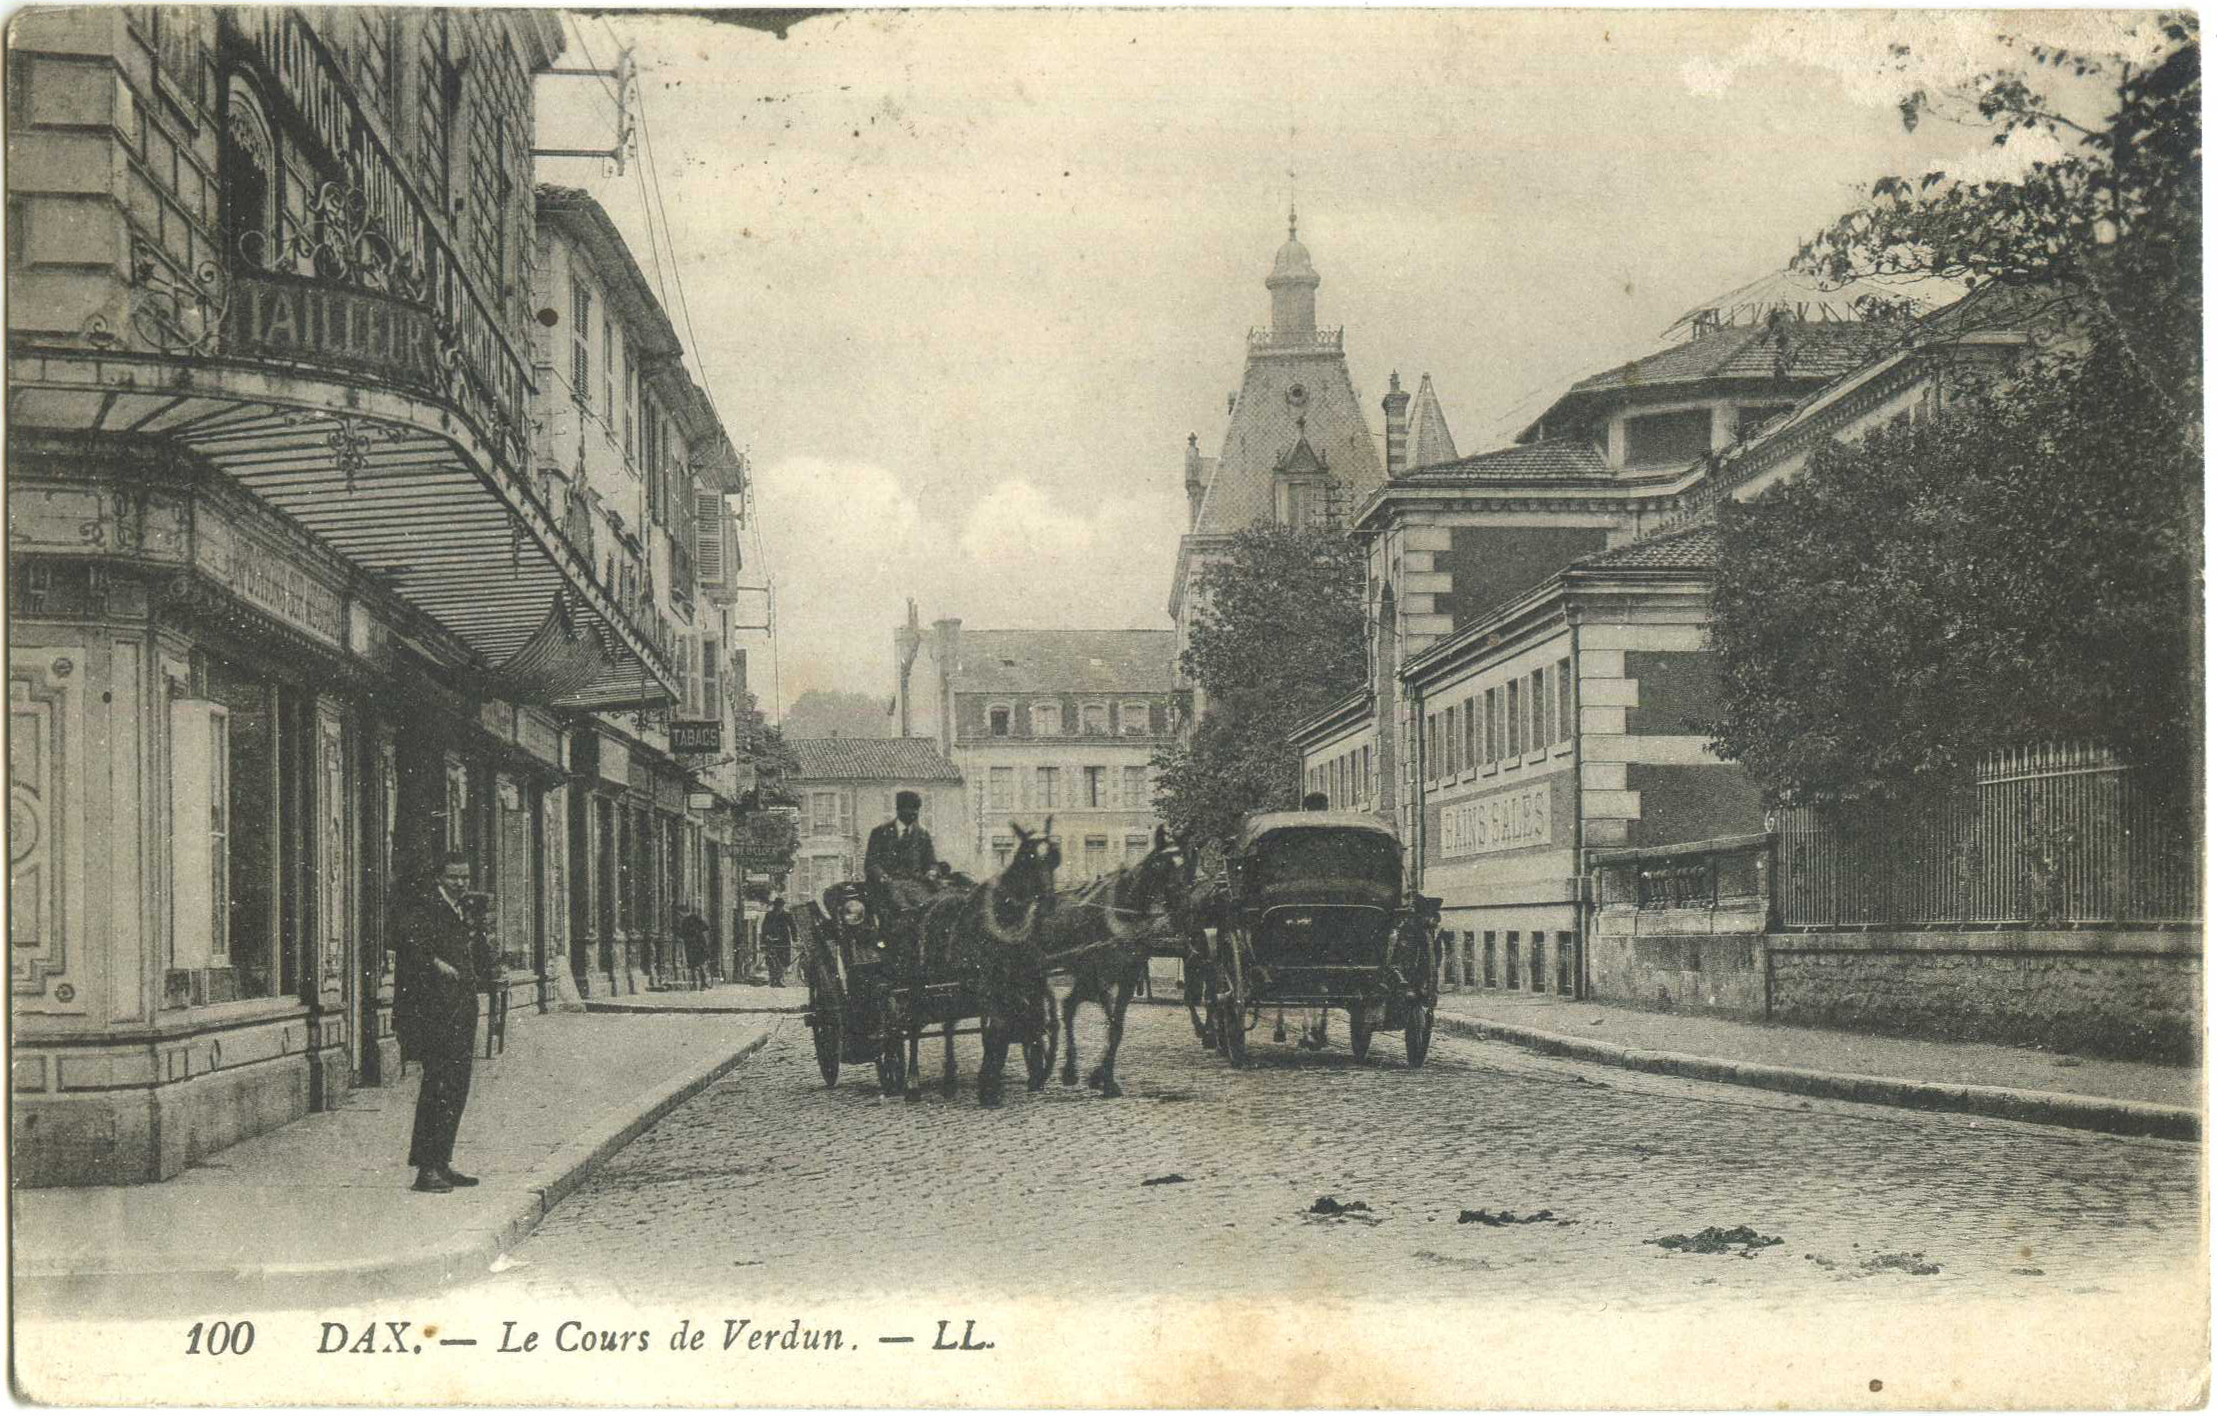 Dax - Le Cours de Verdun.